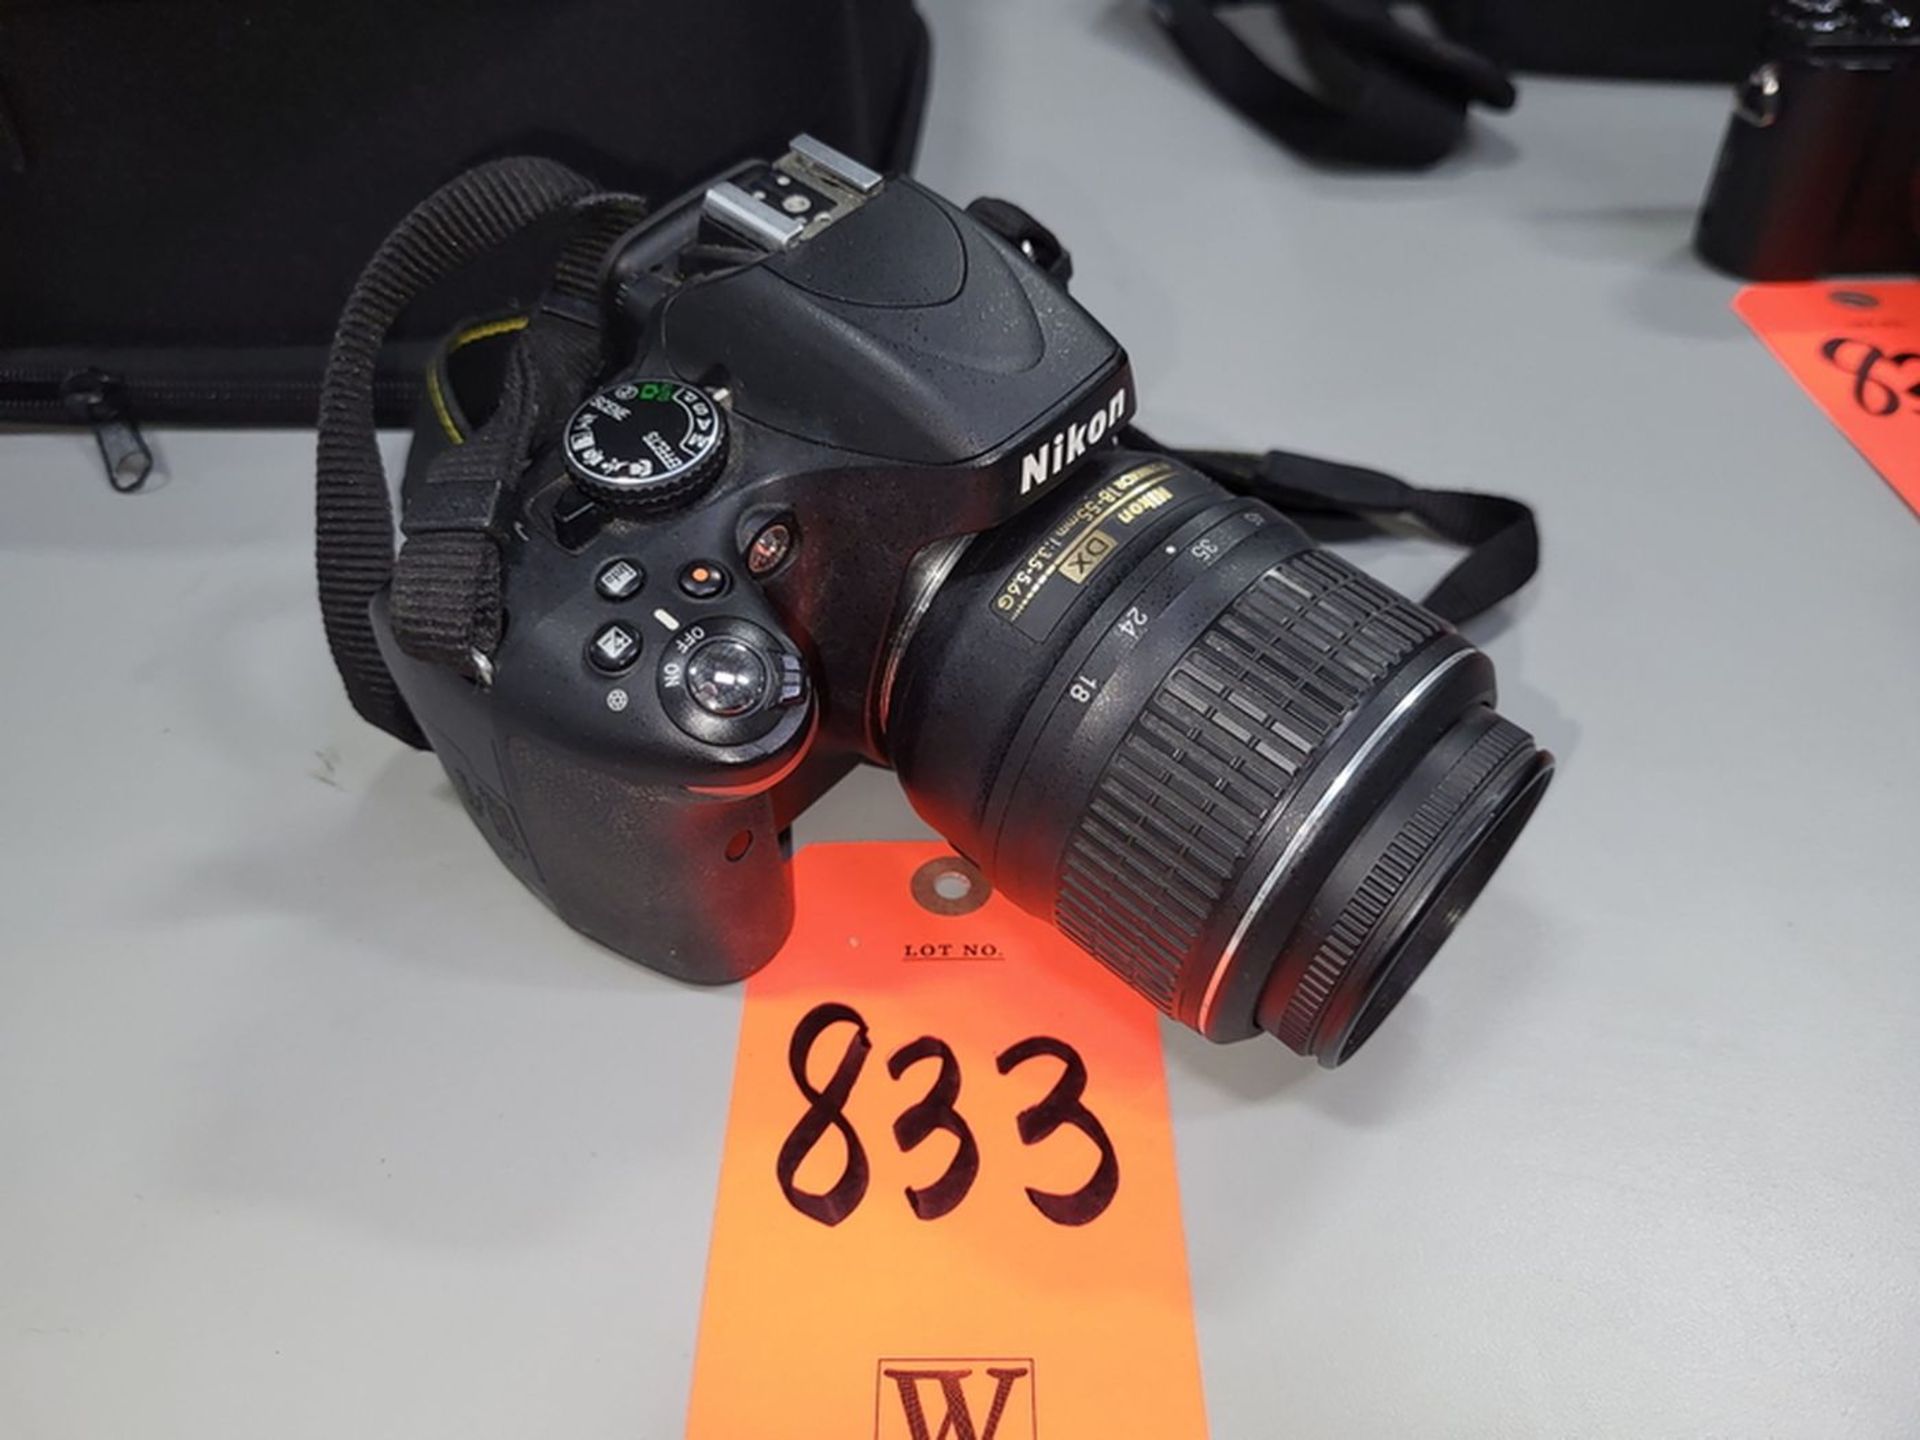 Nikon D5100 Digital Camera; with AF-S Nikkor 18-55 mm Lens